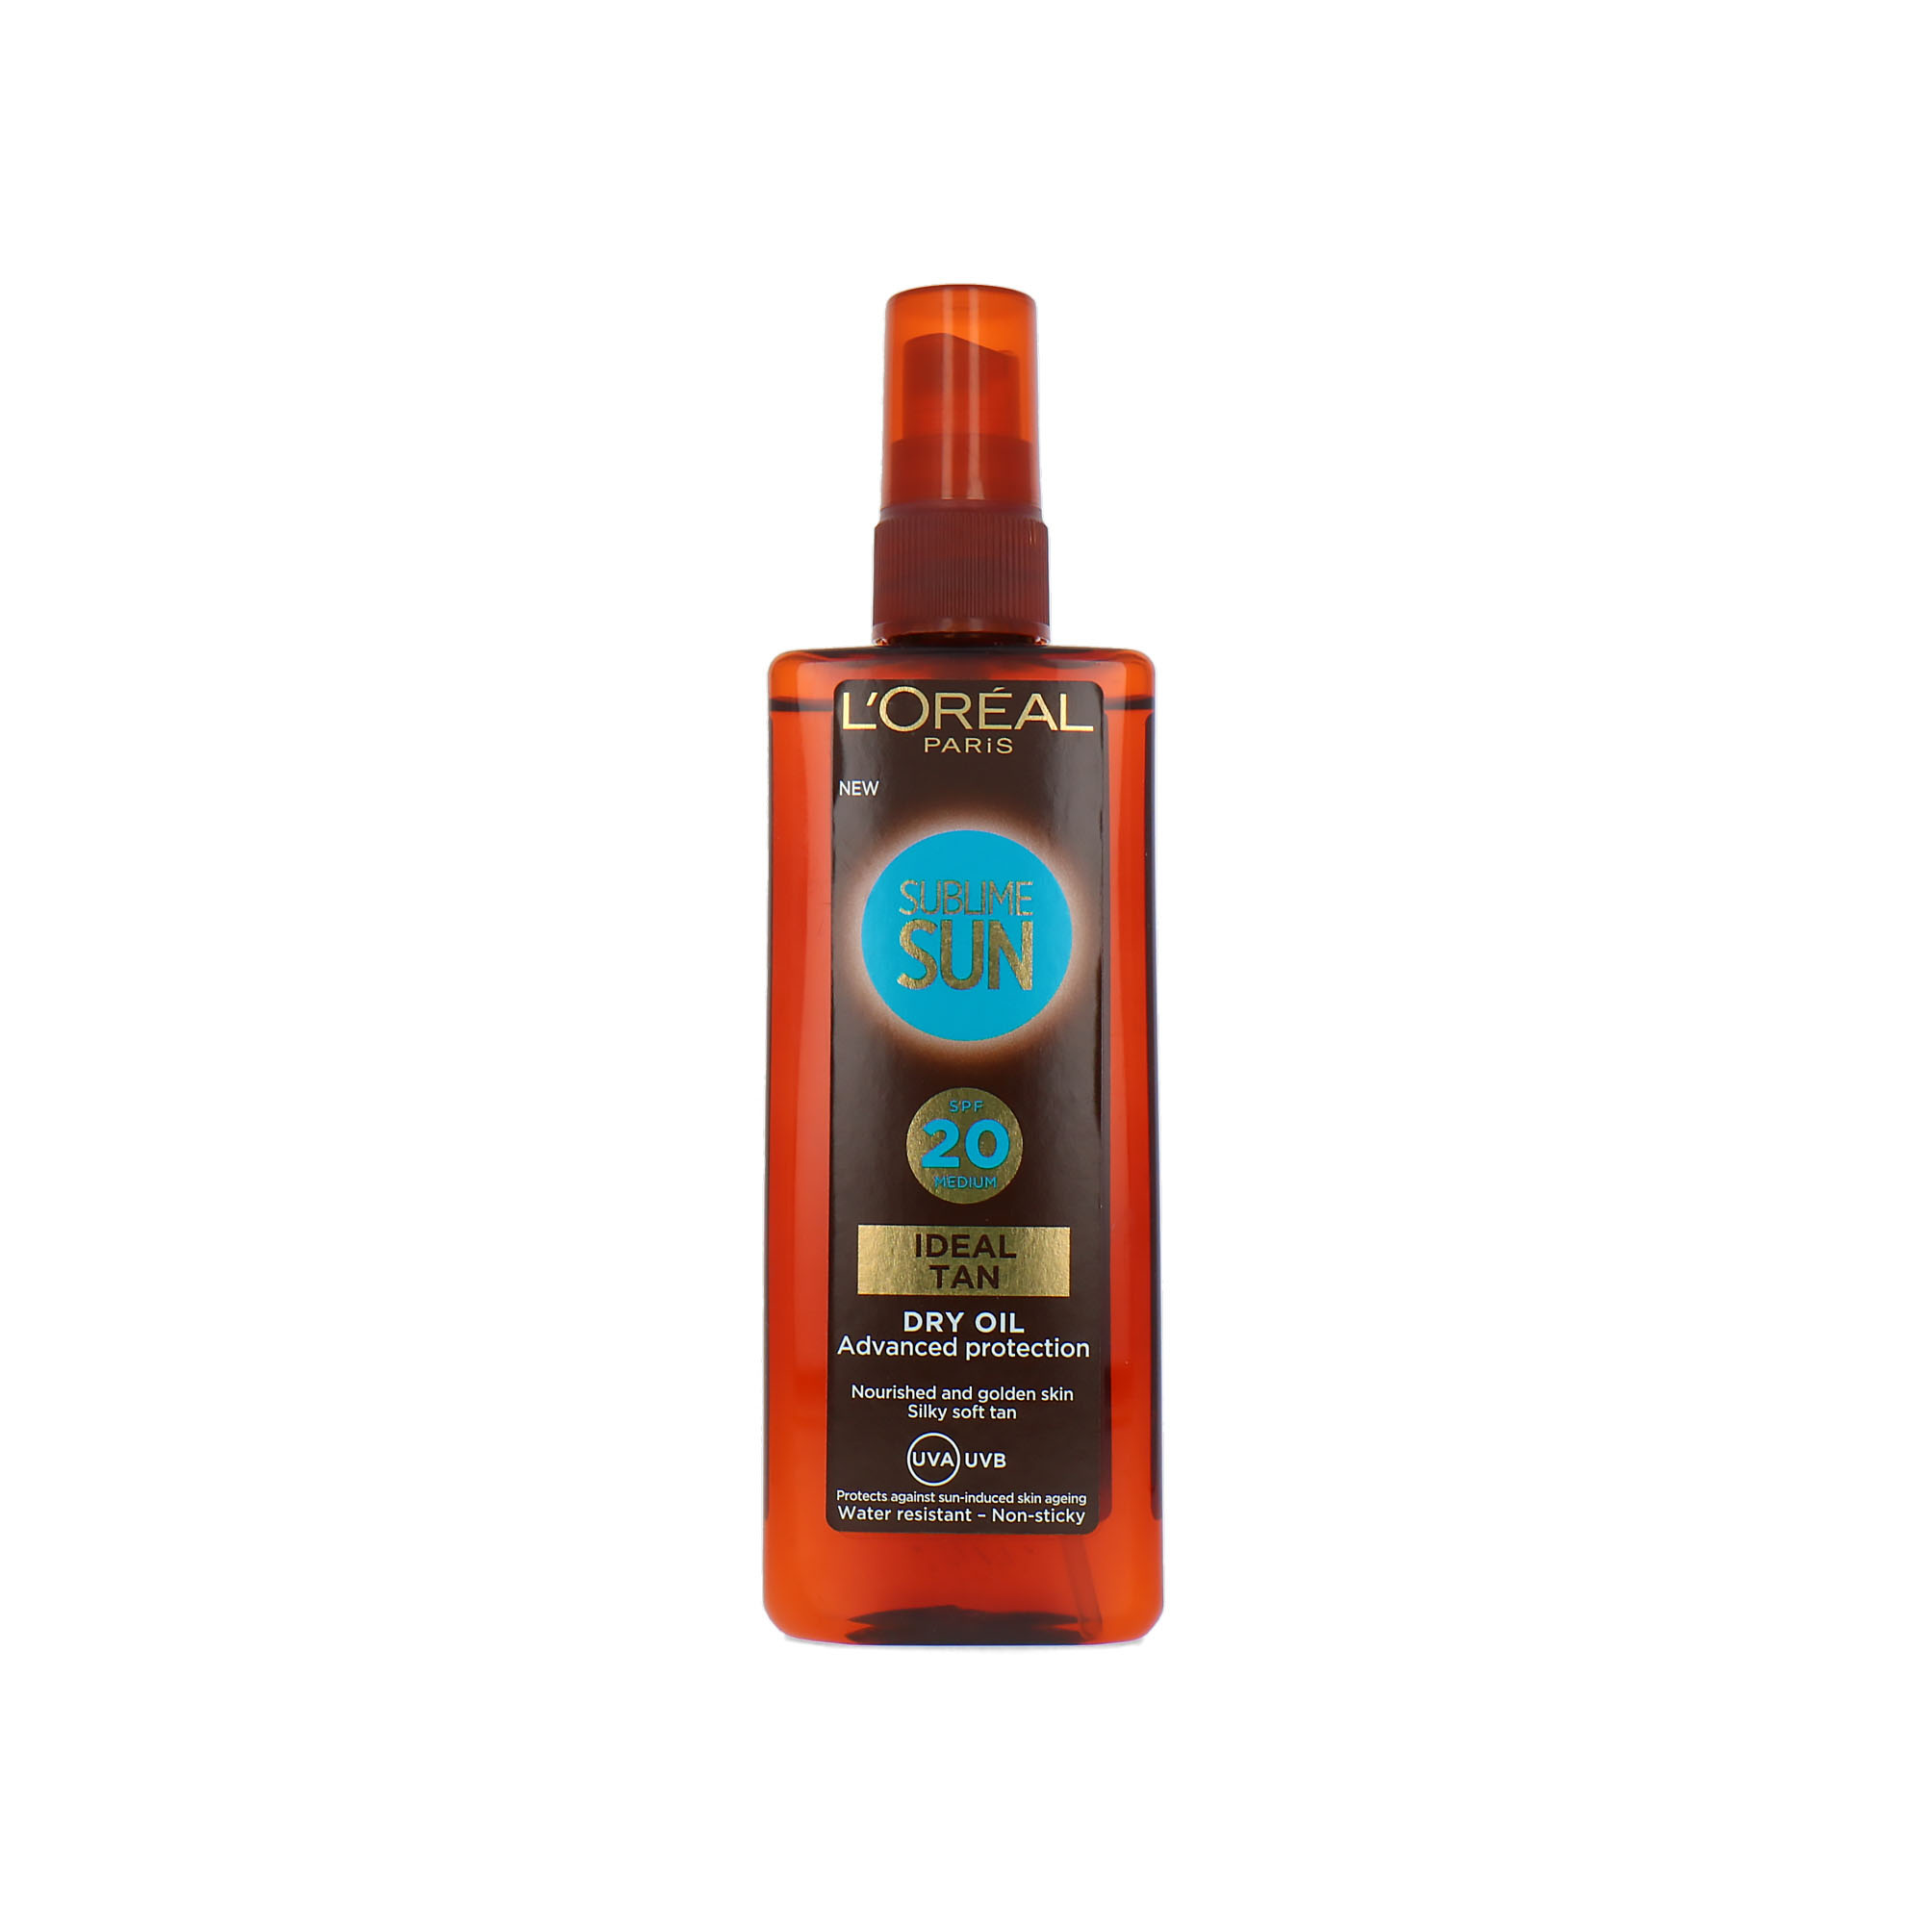 L'Oréal Sublime Sun Ideal Tan Dry Oil SPF 20 - 150 ml